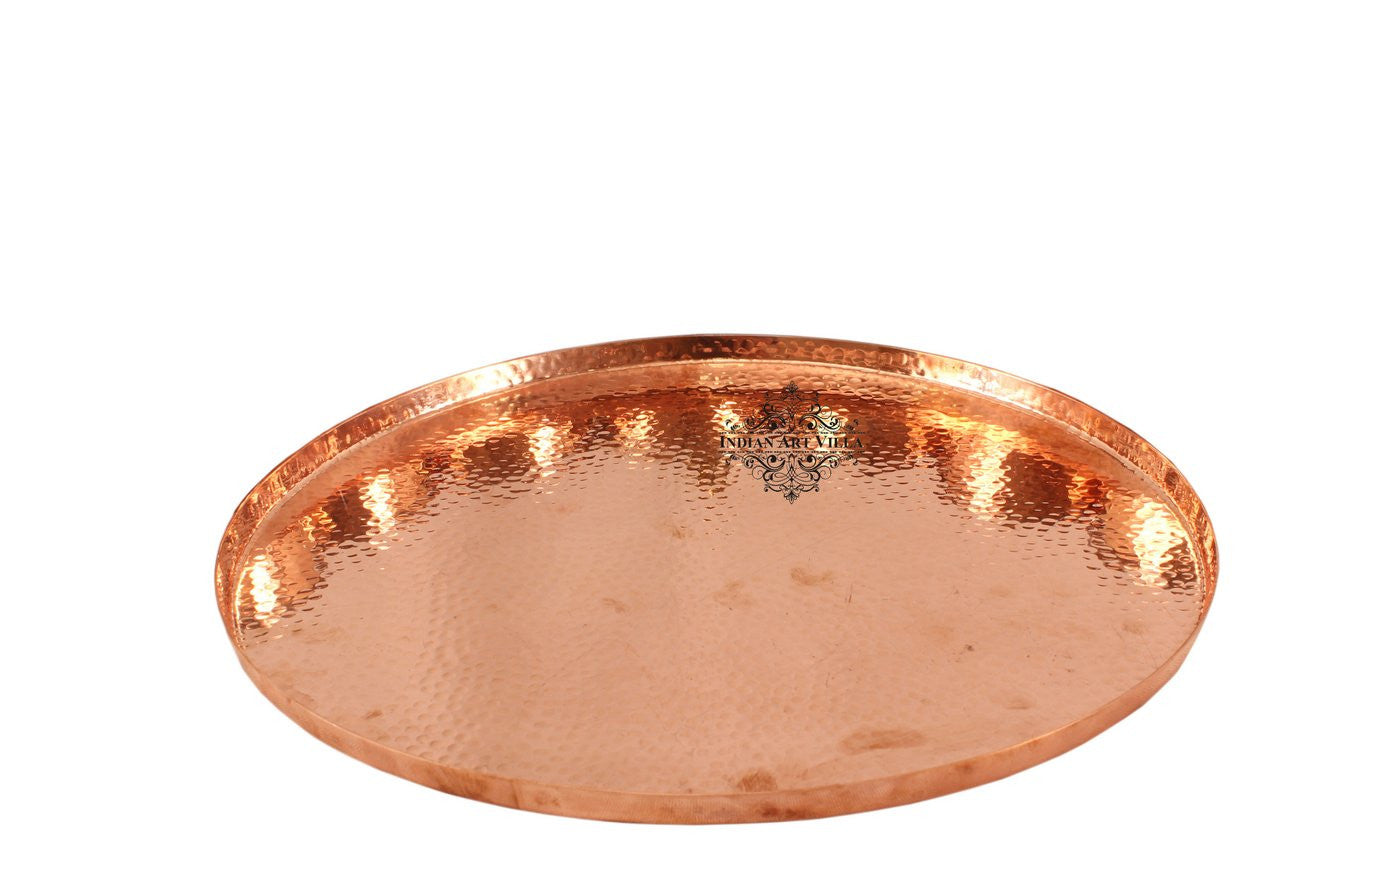 Metaltex Aquatex Copper Dish Drainer with Tray, Metal, Copper, 37X 33x 63cm